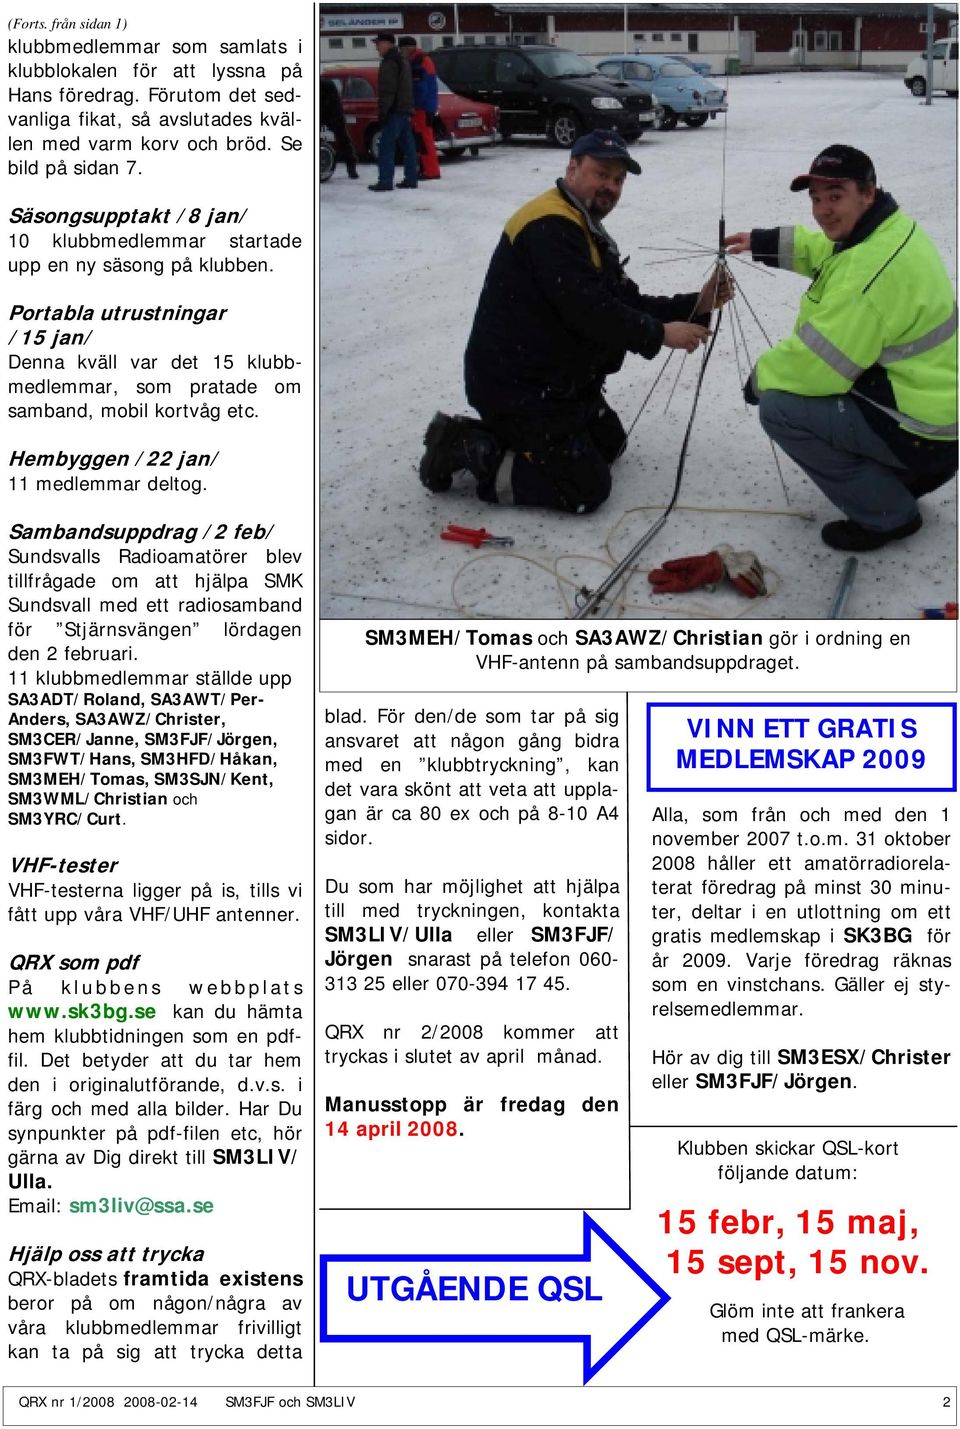 Hembyggen /22 jan/ 11 medlemmar deltog. Sambandsuppdrag /2 feb/ Sundsvalls Radioamatörer blev tillfrågade om att hjälpa SMK Sundsvall med ett radiosamband för Stjärnsvängen lördagen den 2 februari.